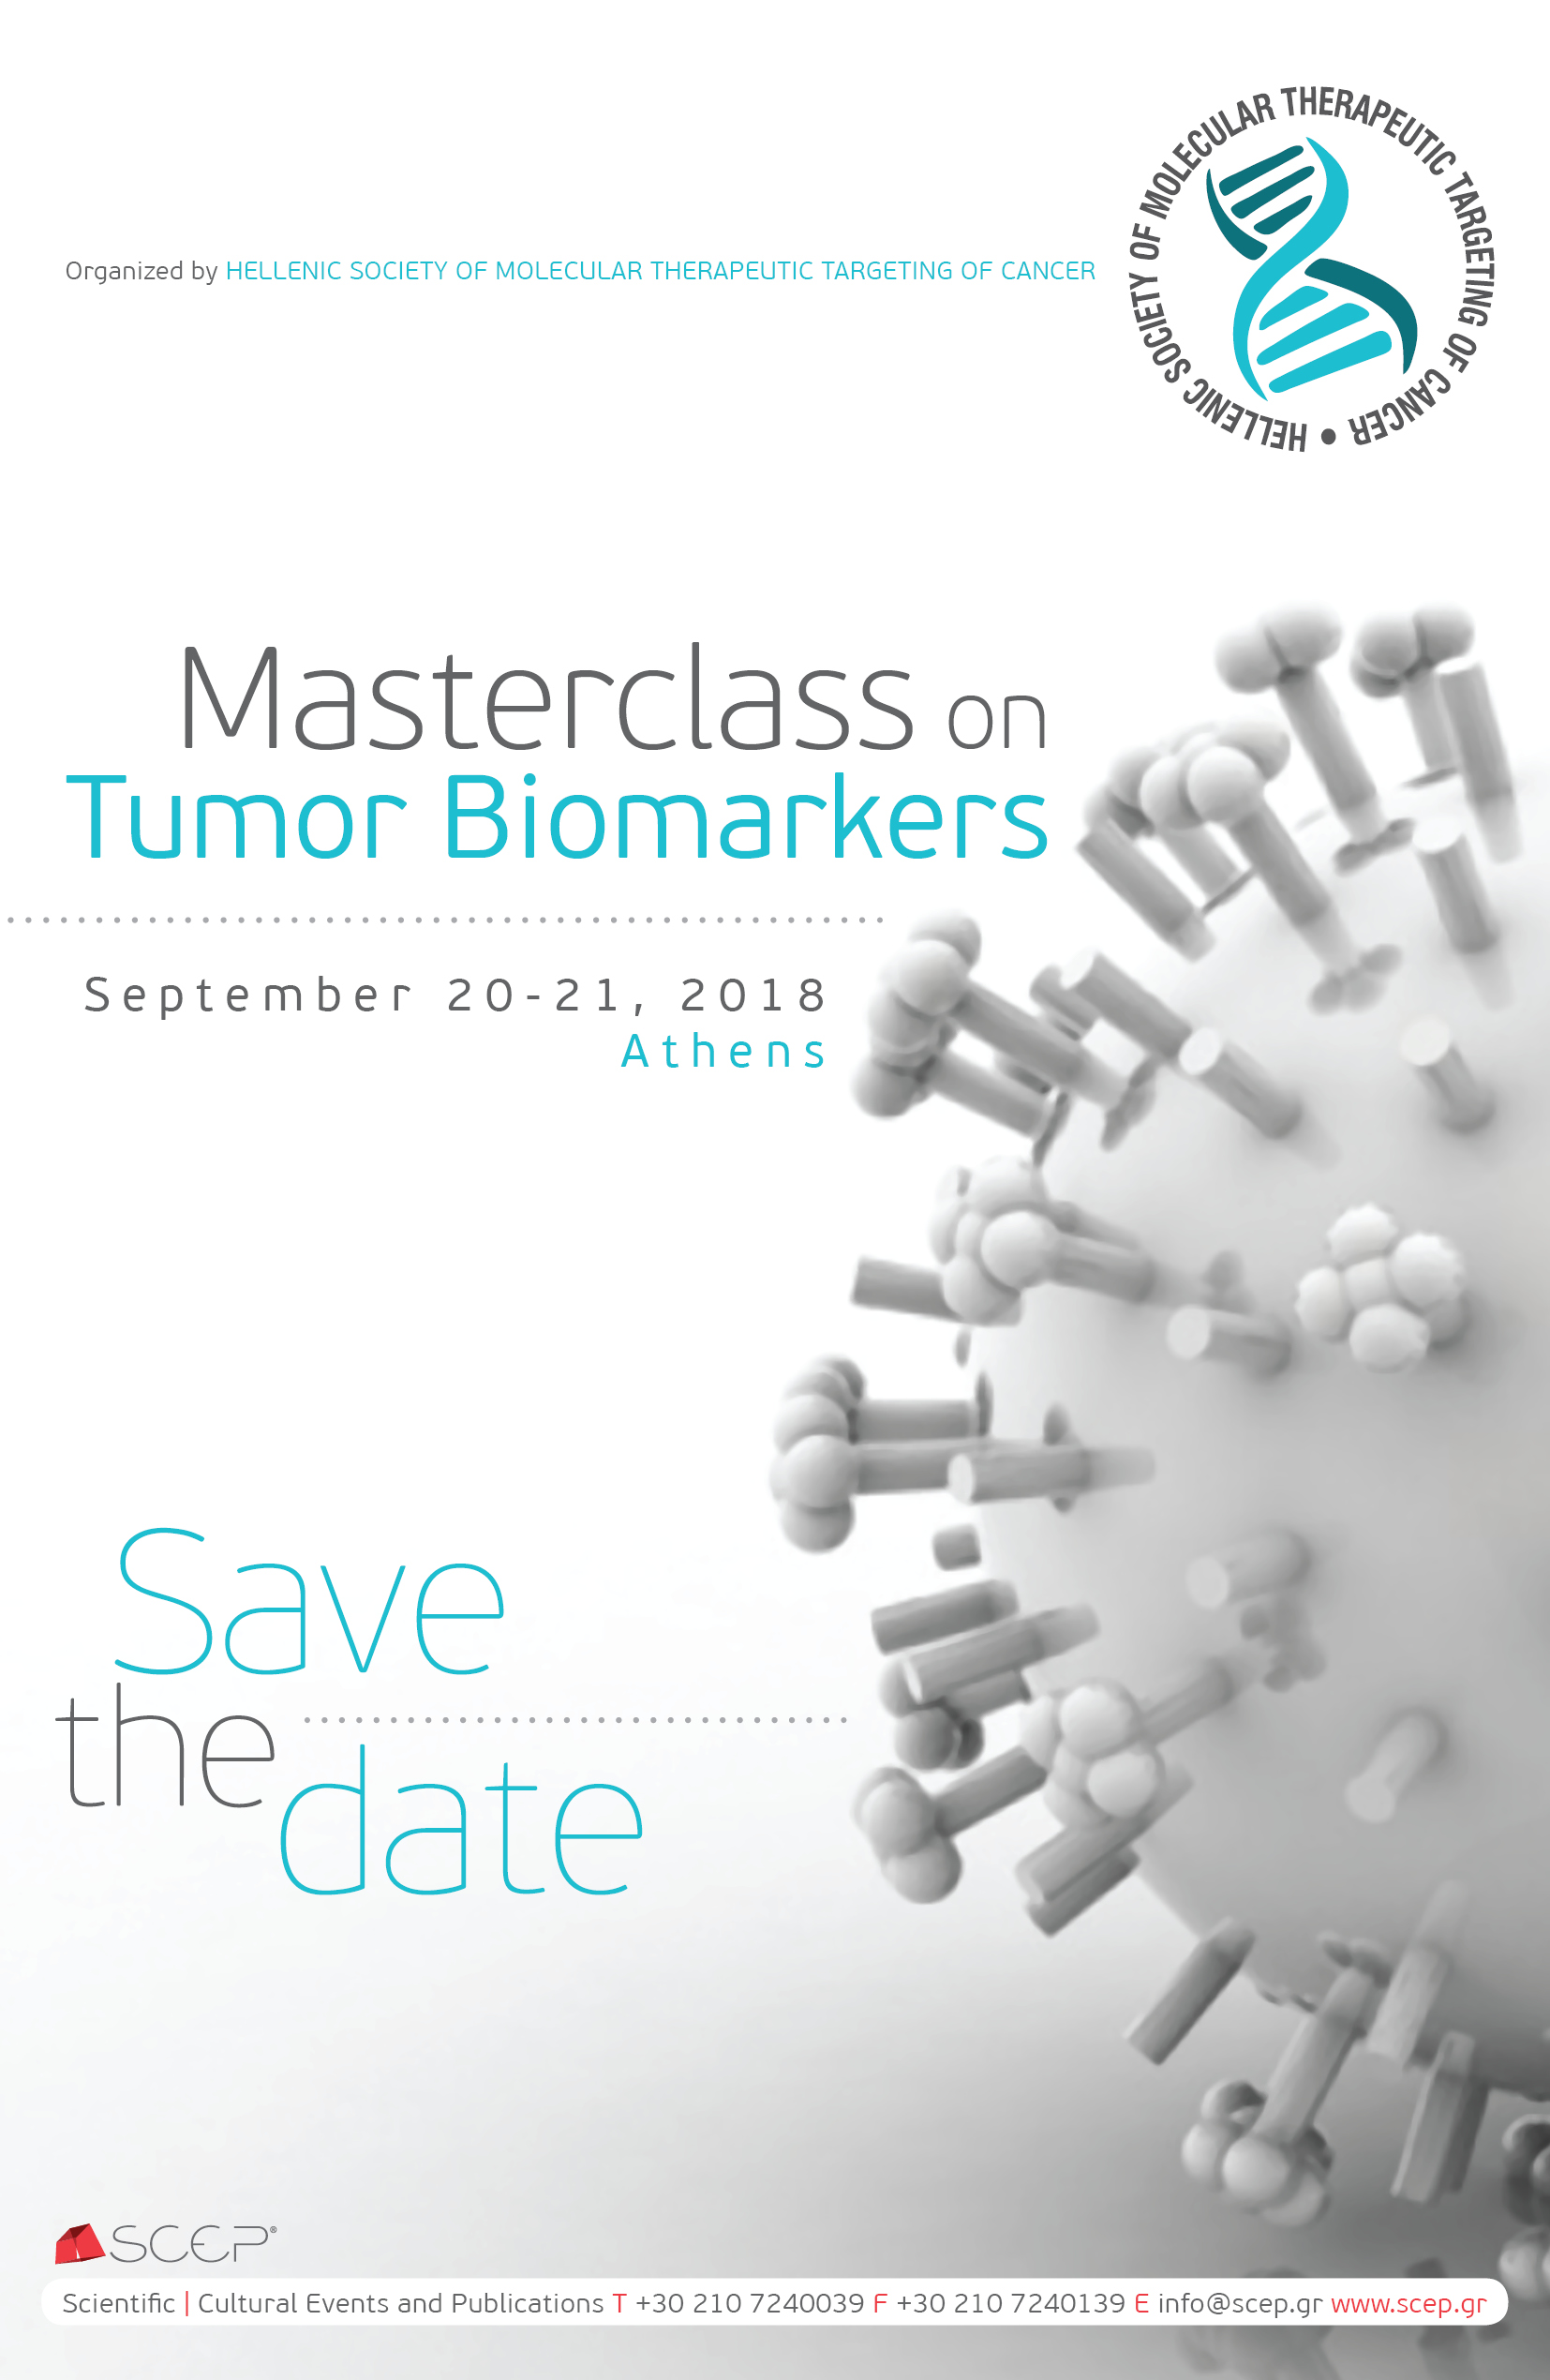 Αποτέλεσμα εικόνας για Masterclass on Tumor Biomarkers, Crowne Plaza, Athens, September 20-21, 2018.